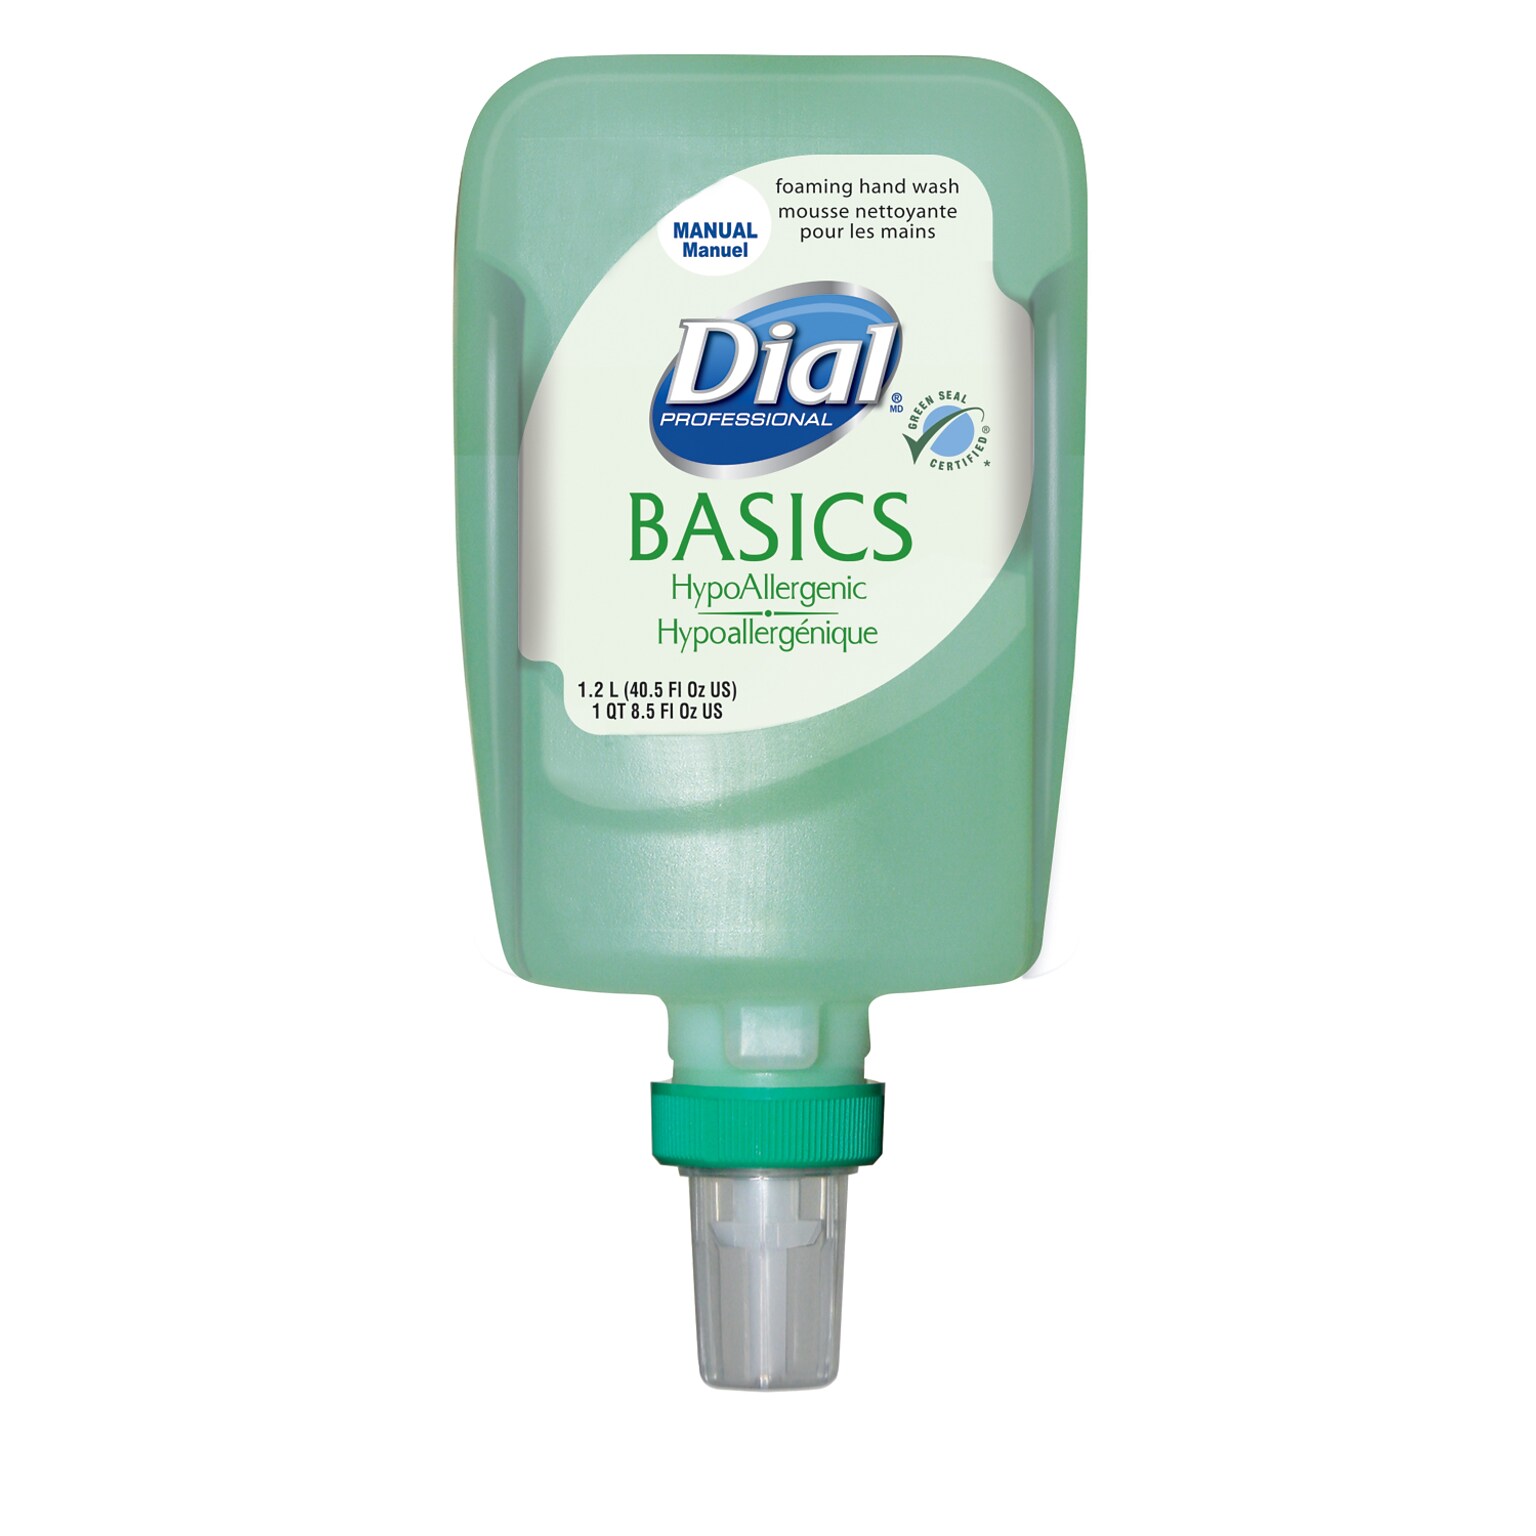 Dial Professional Basics Foaming Hand Soap Refill, 1.2L., 3/Carton (DIA16714)